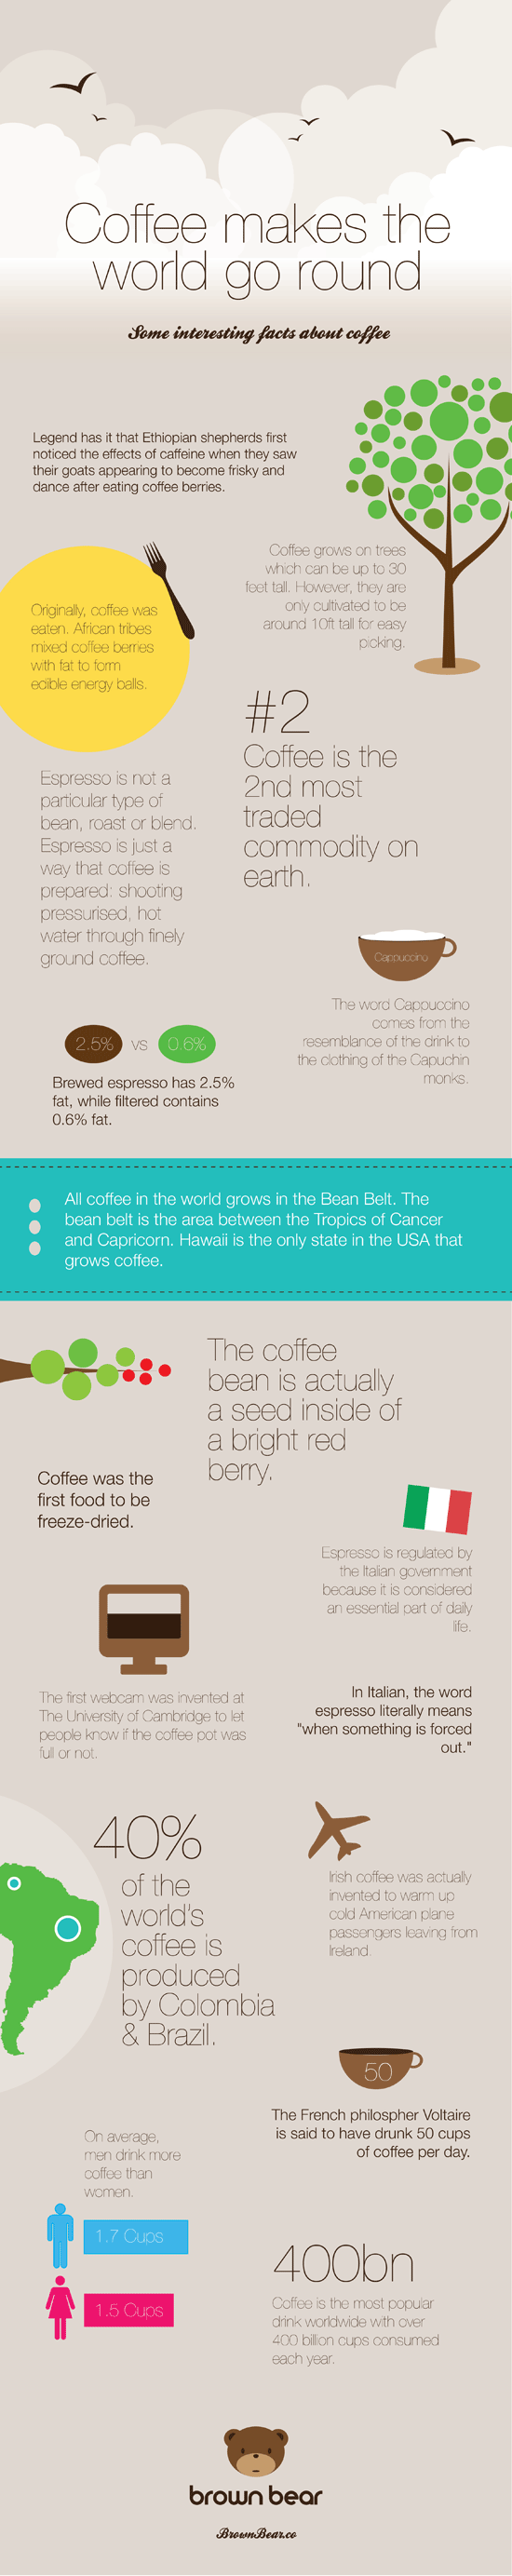 Infografik mit interessanten Fakten rund um Kaffee